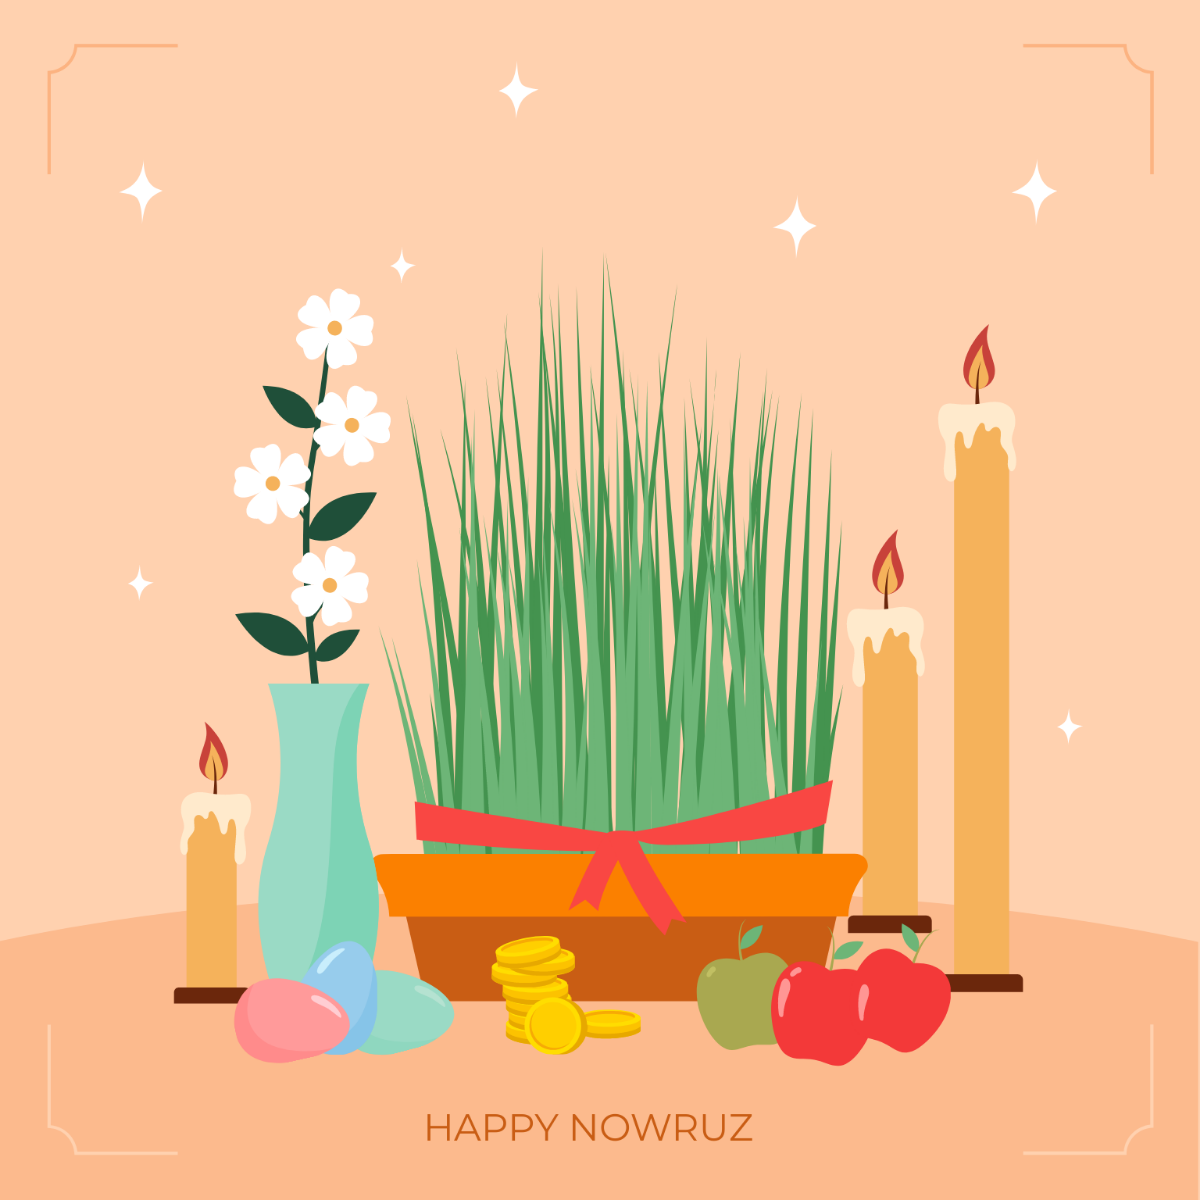 Nowruz Image